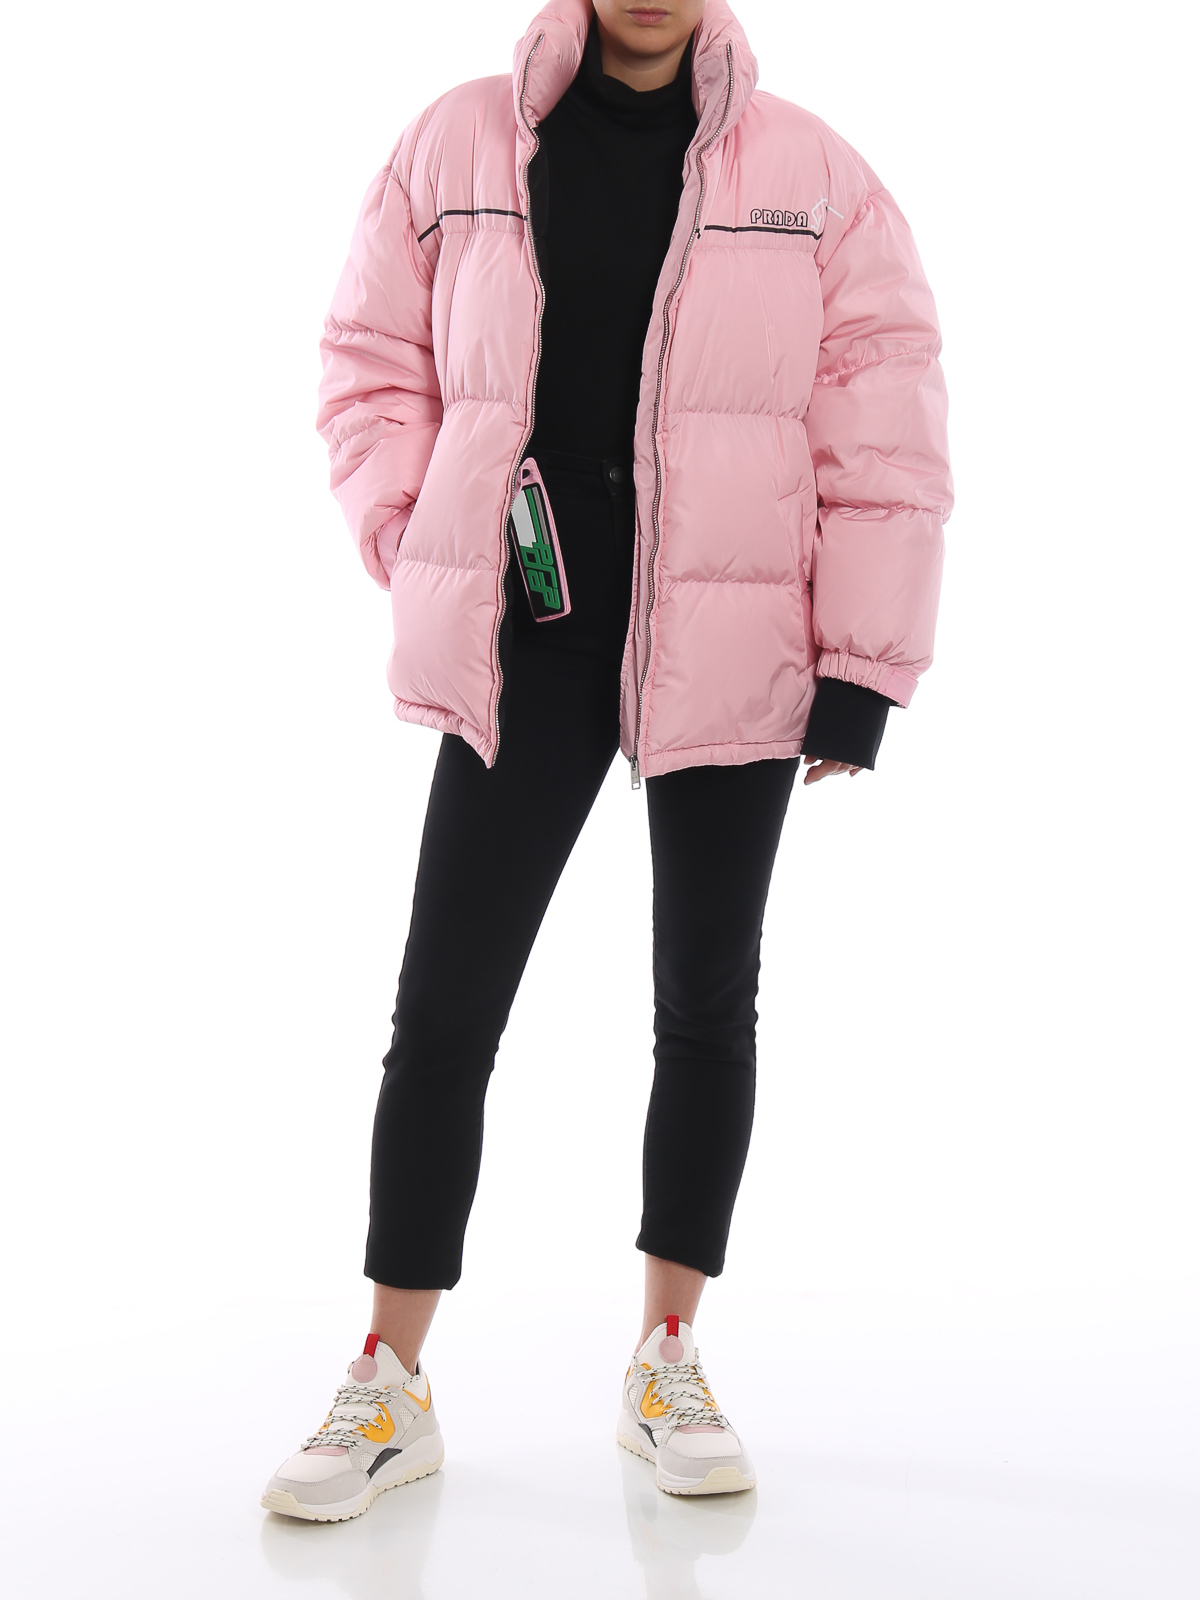 prada pink jacket